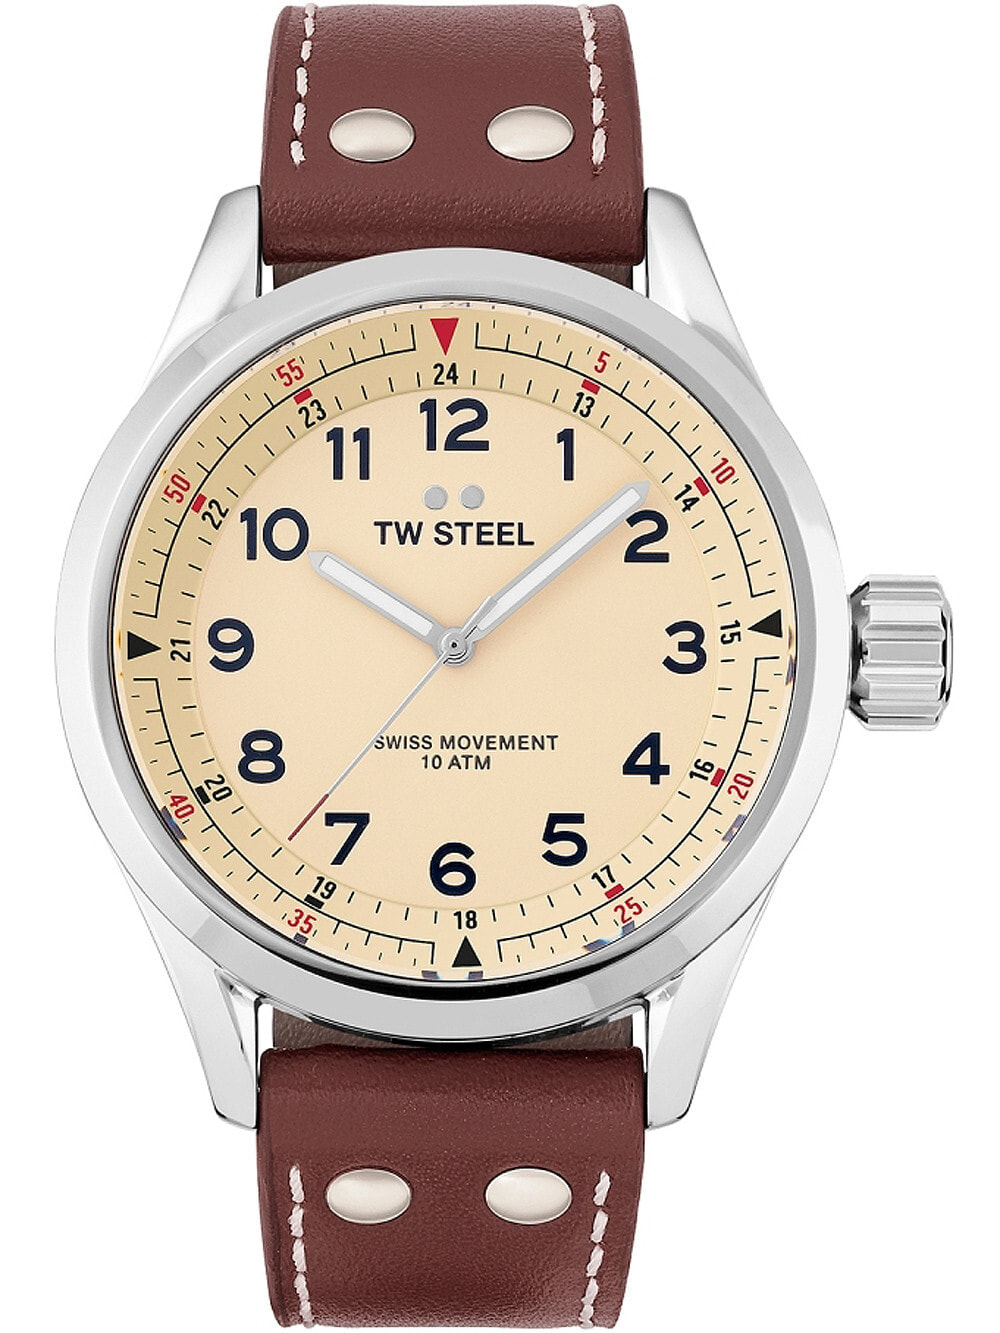 Мужские наручные часы с коричневым кожаным ремешком TW-Steel SVS101 Volante mens 45mm 10ATM